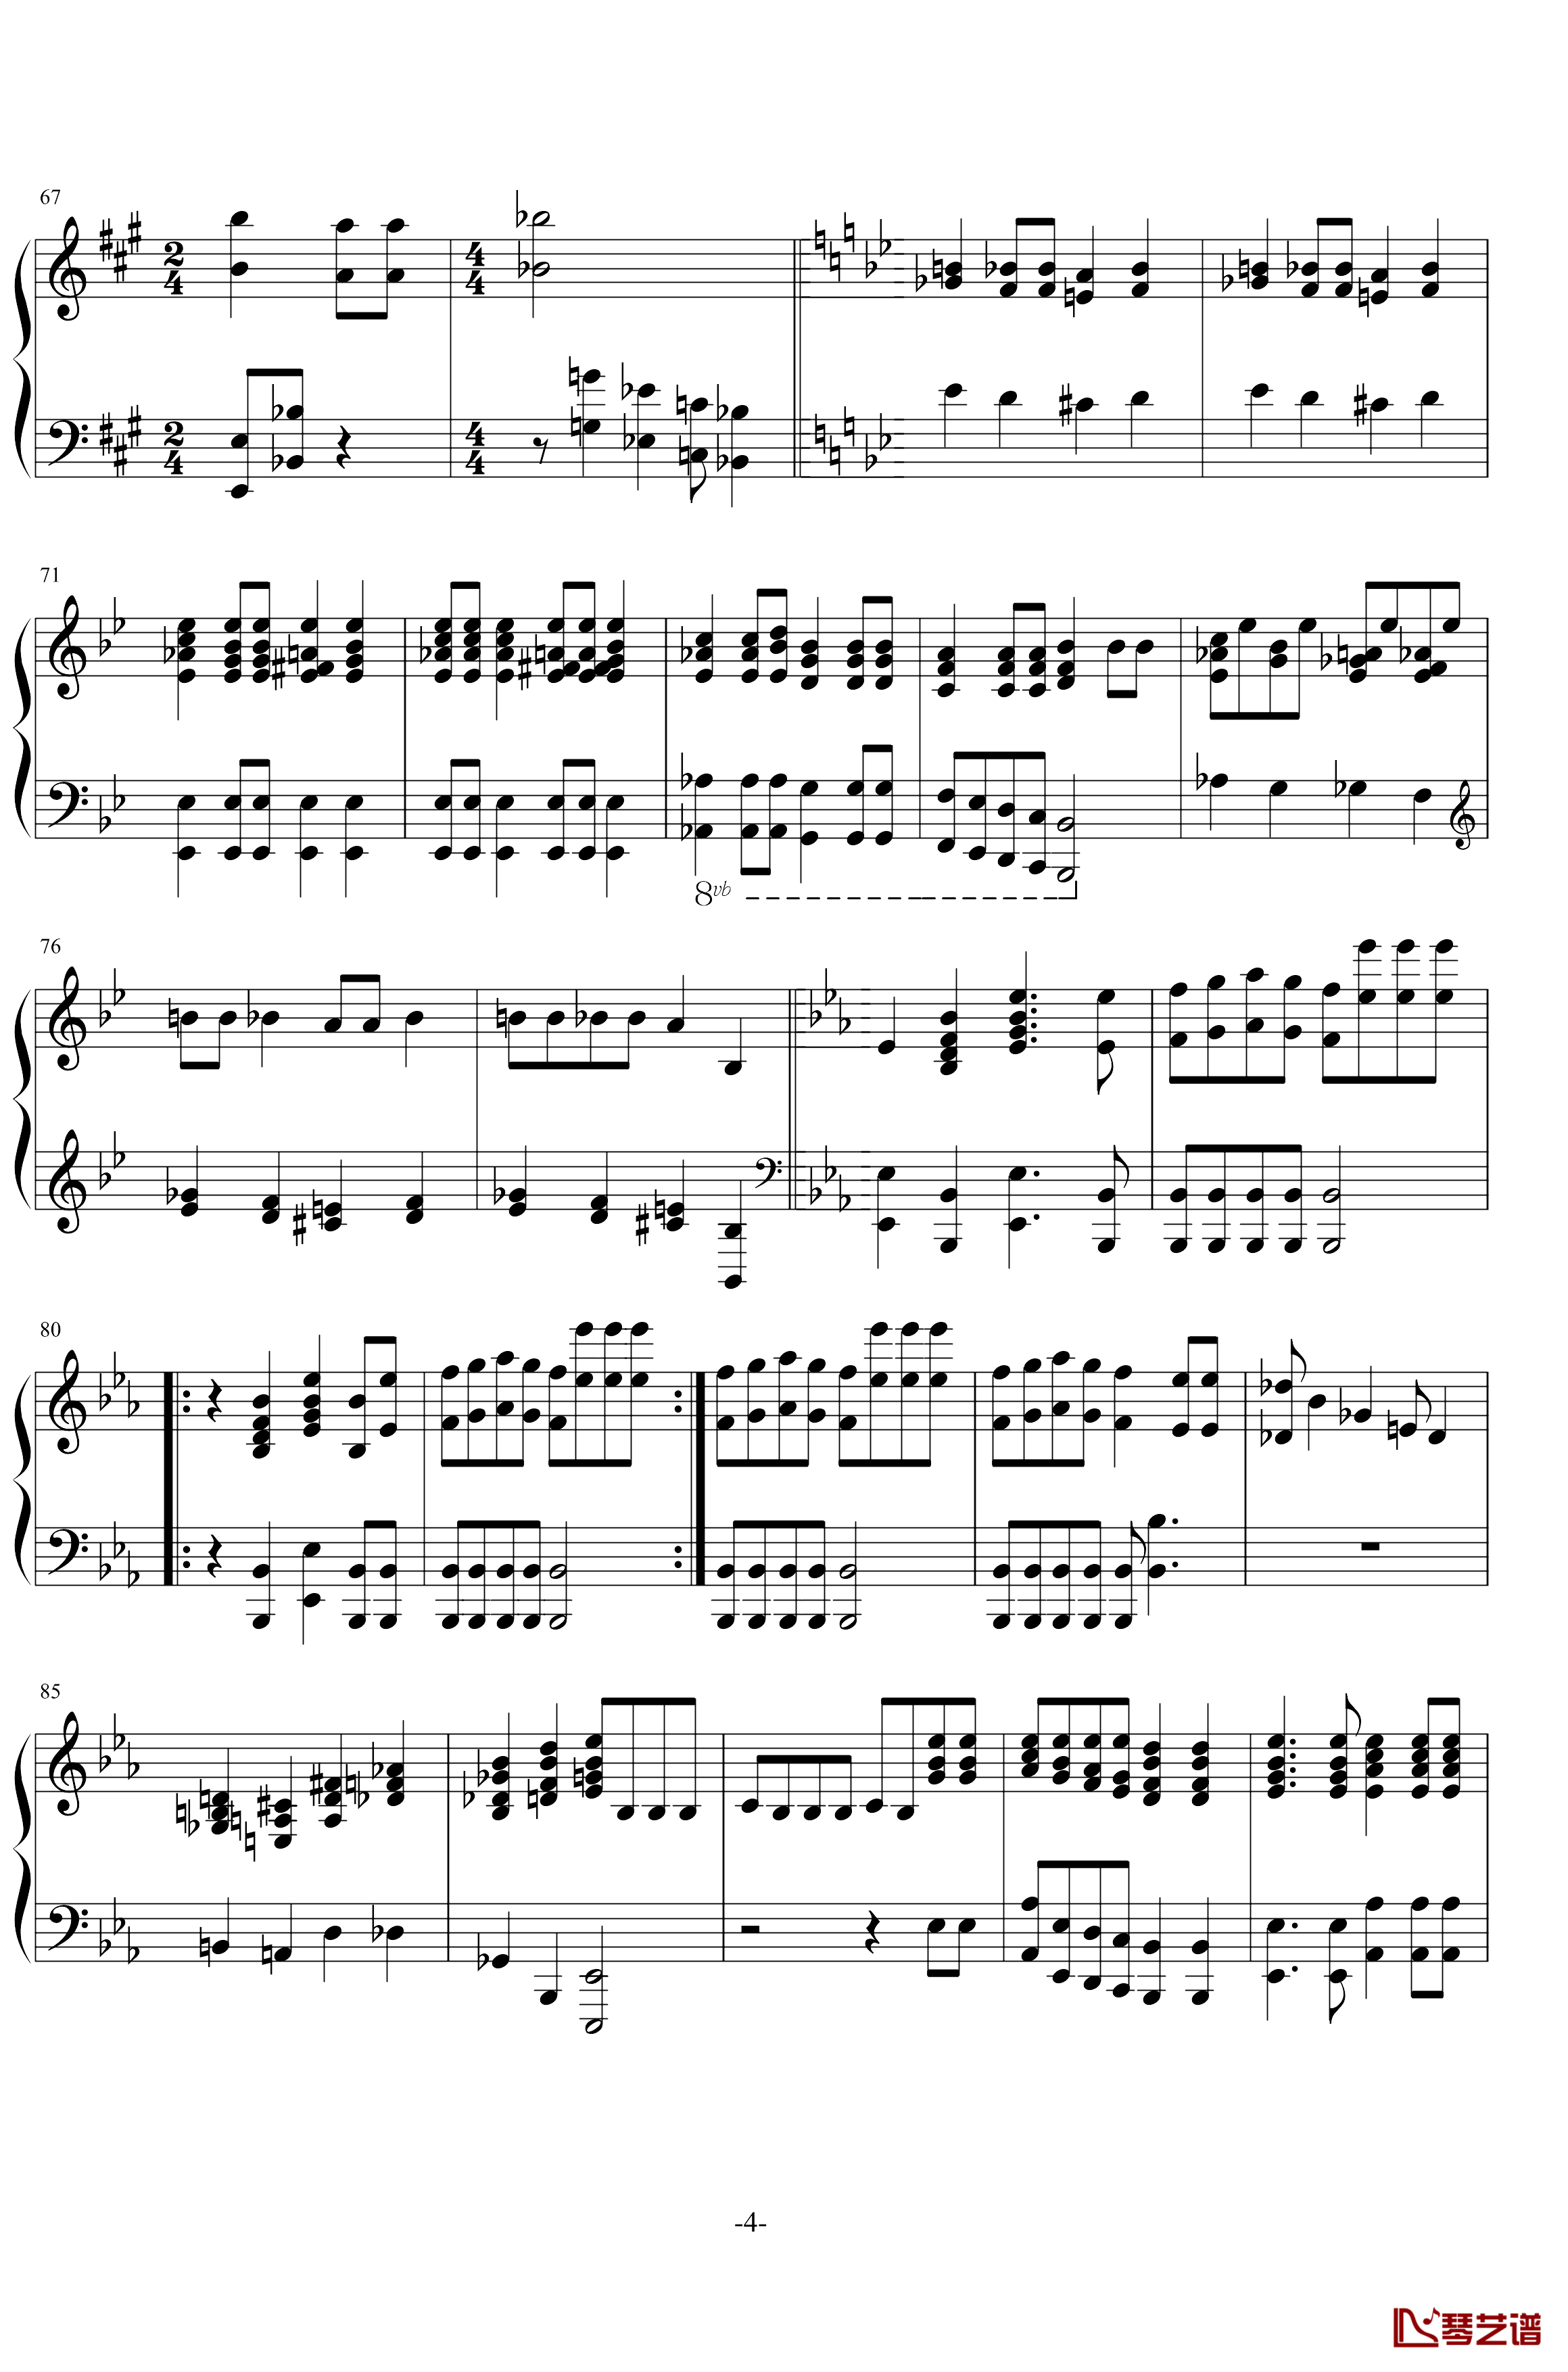 波西米亚狂想曲钢琴谱-Queen4